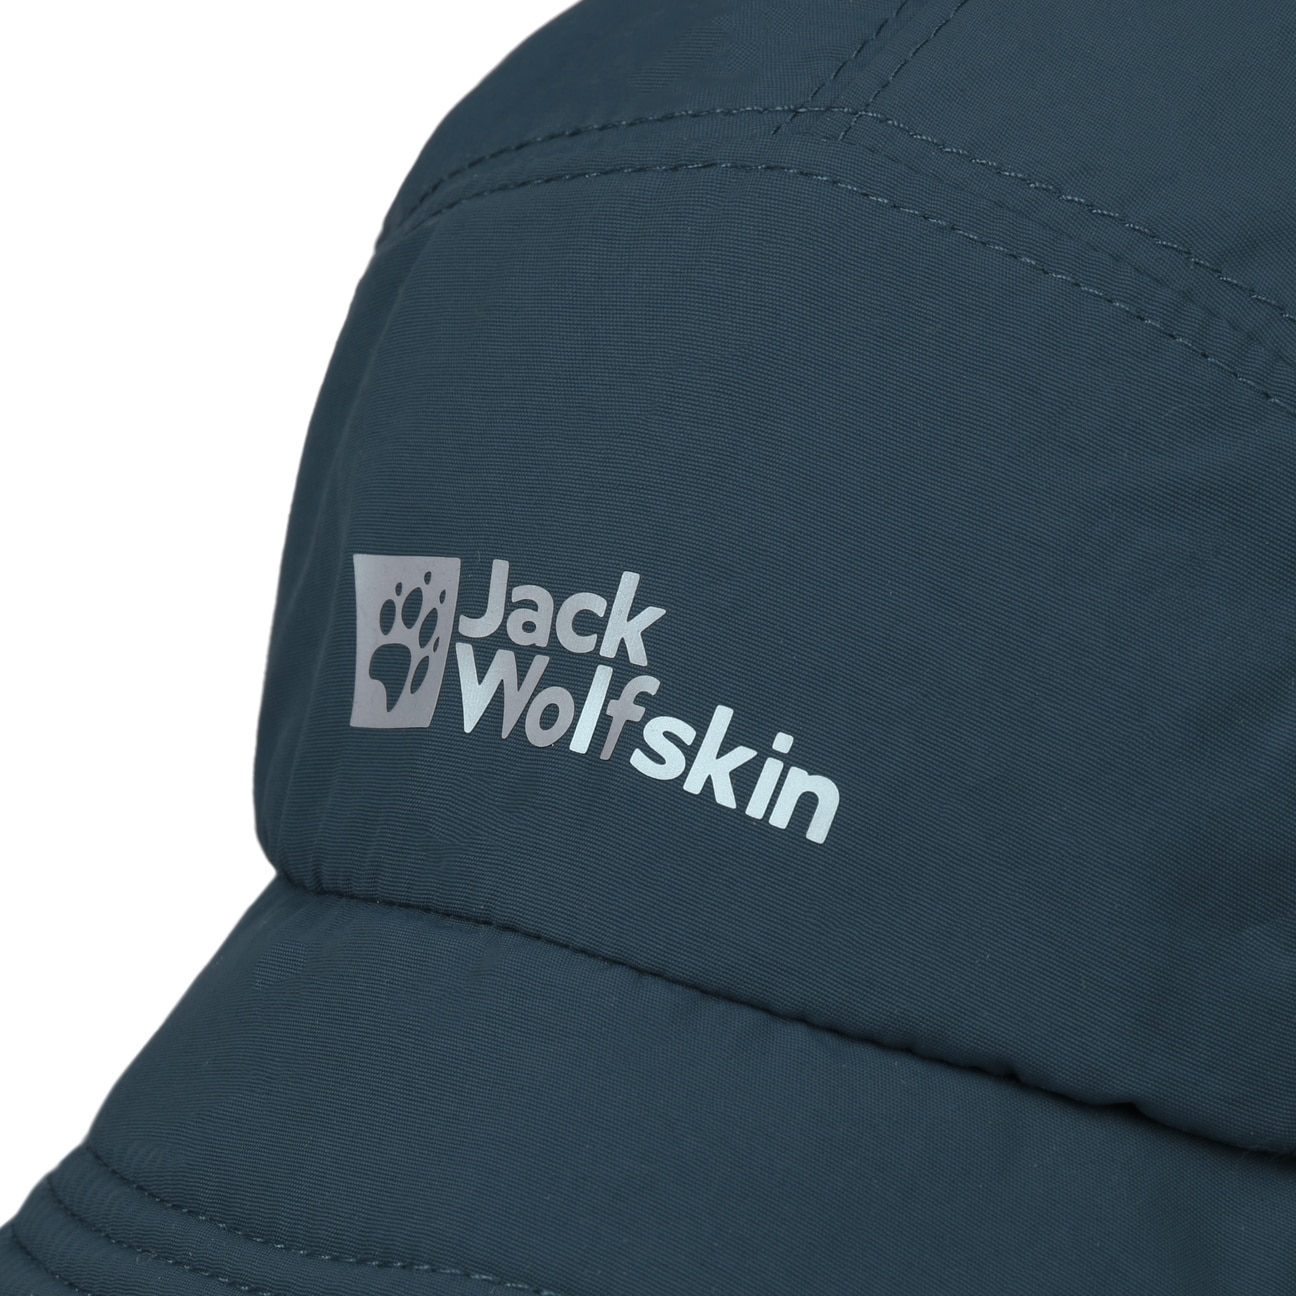 Villi Vent 42,95 Hat by € - Summer Jack Wolfskin Kids